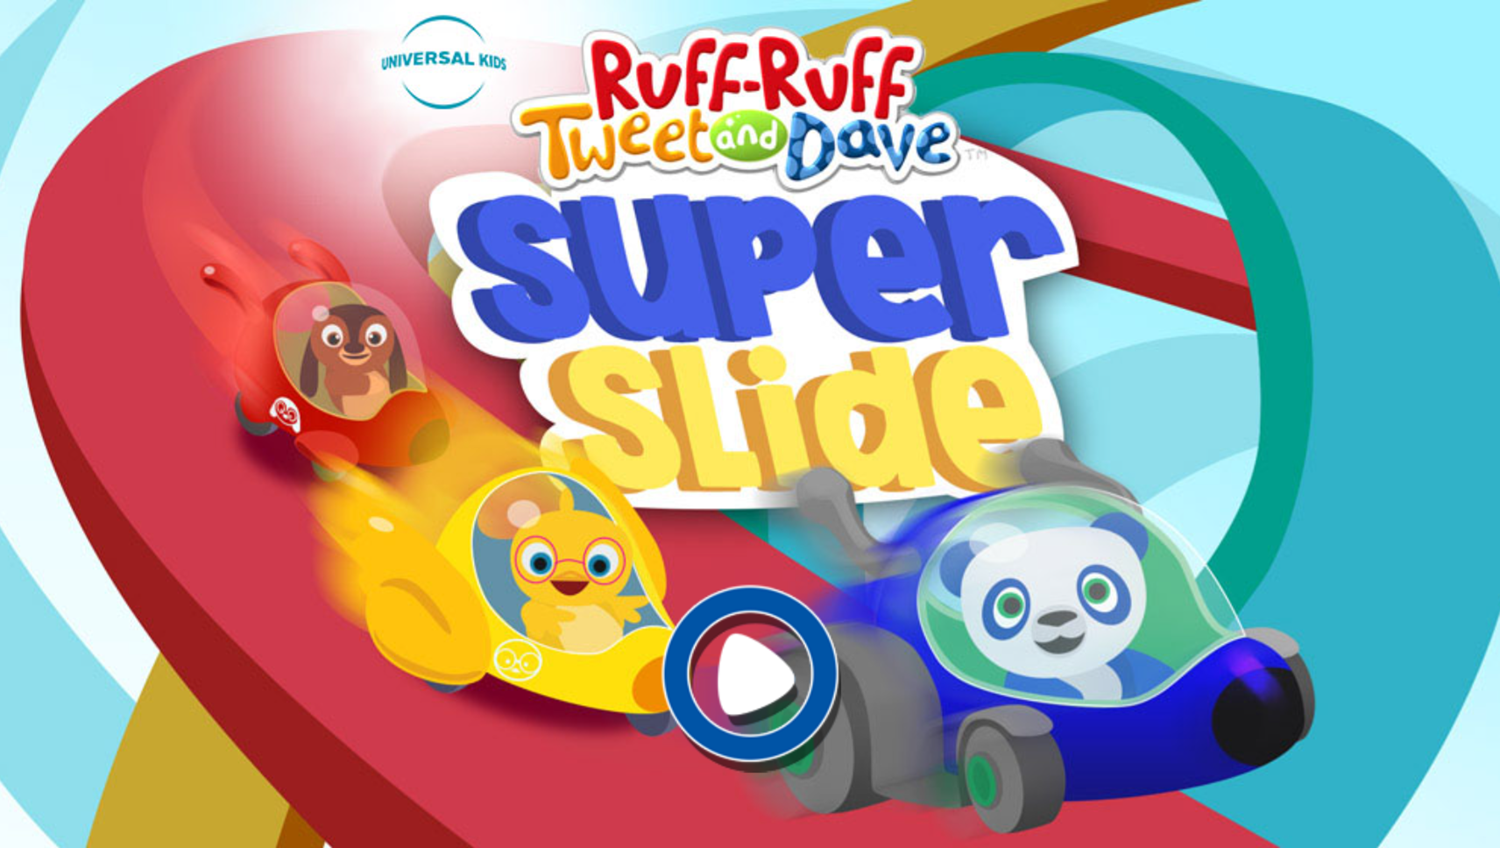 Ruff-Ruff Tweet and Dave Super Slide Game Welcome Screen Screenshot.